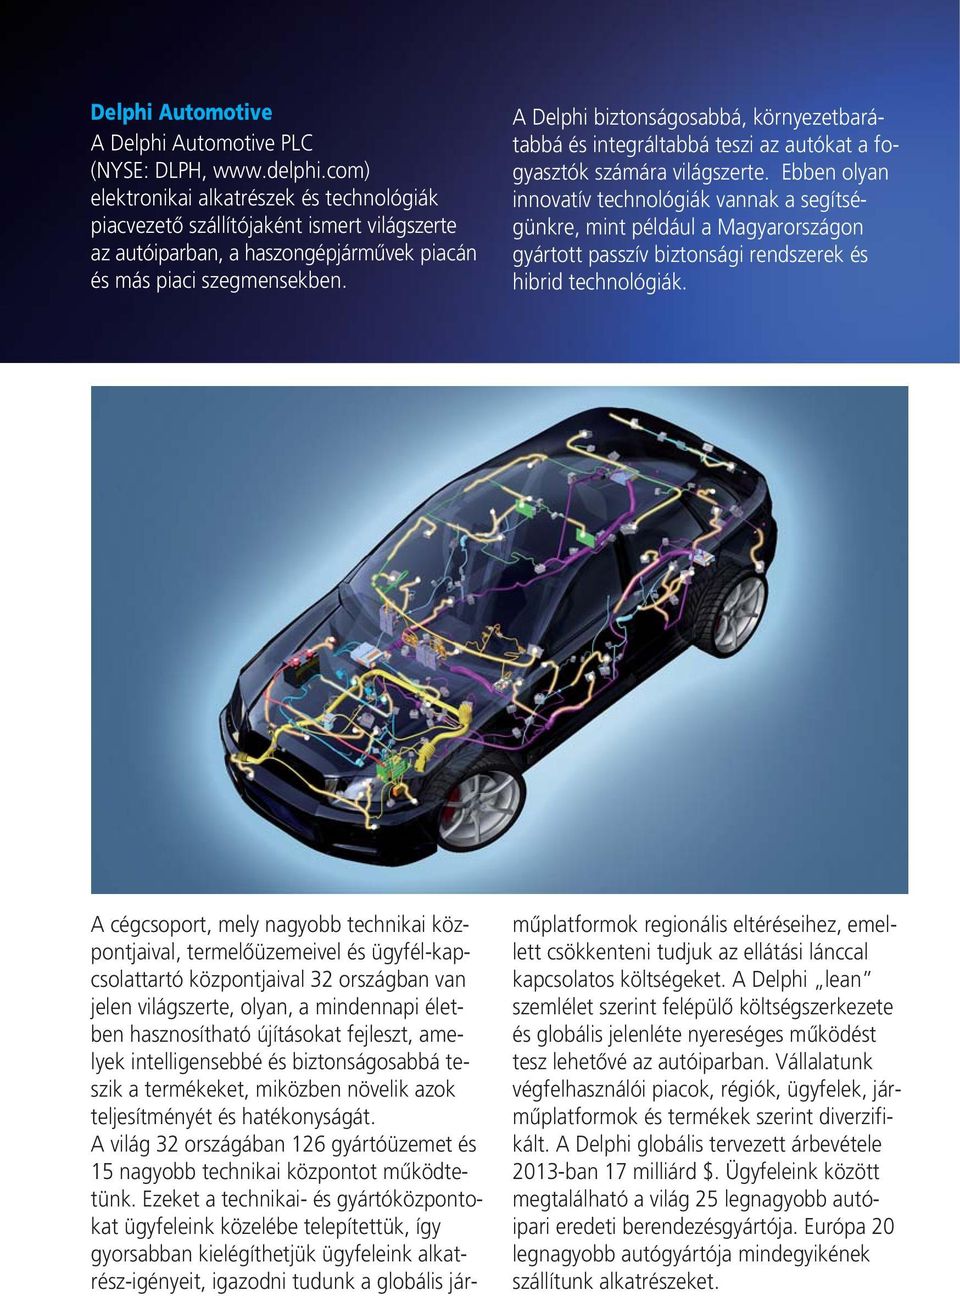 A Delphi biztonságosabbá, környezetbarátabbá és integráltabbá teszi az autókat a fogyasztók számára világszerte.